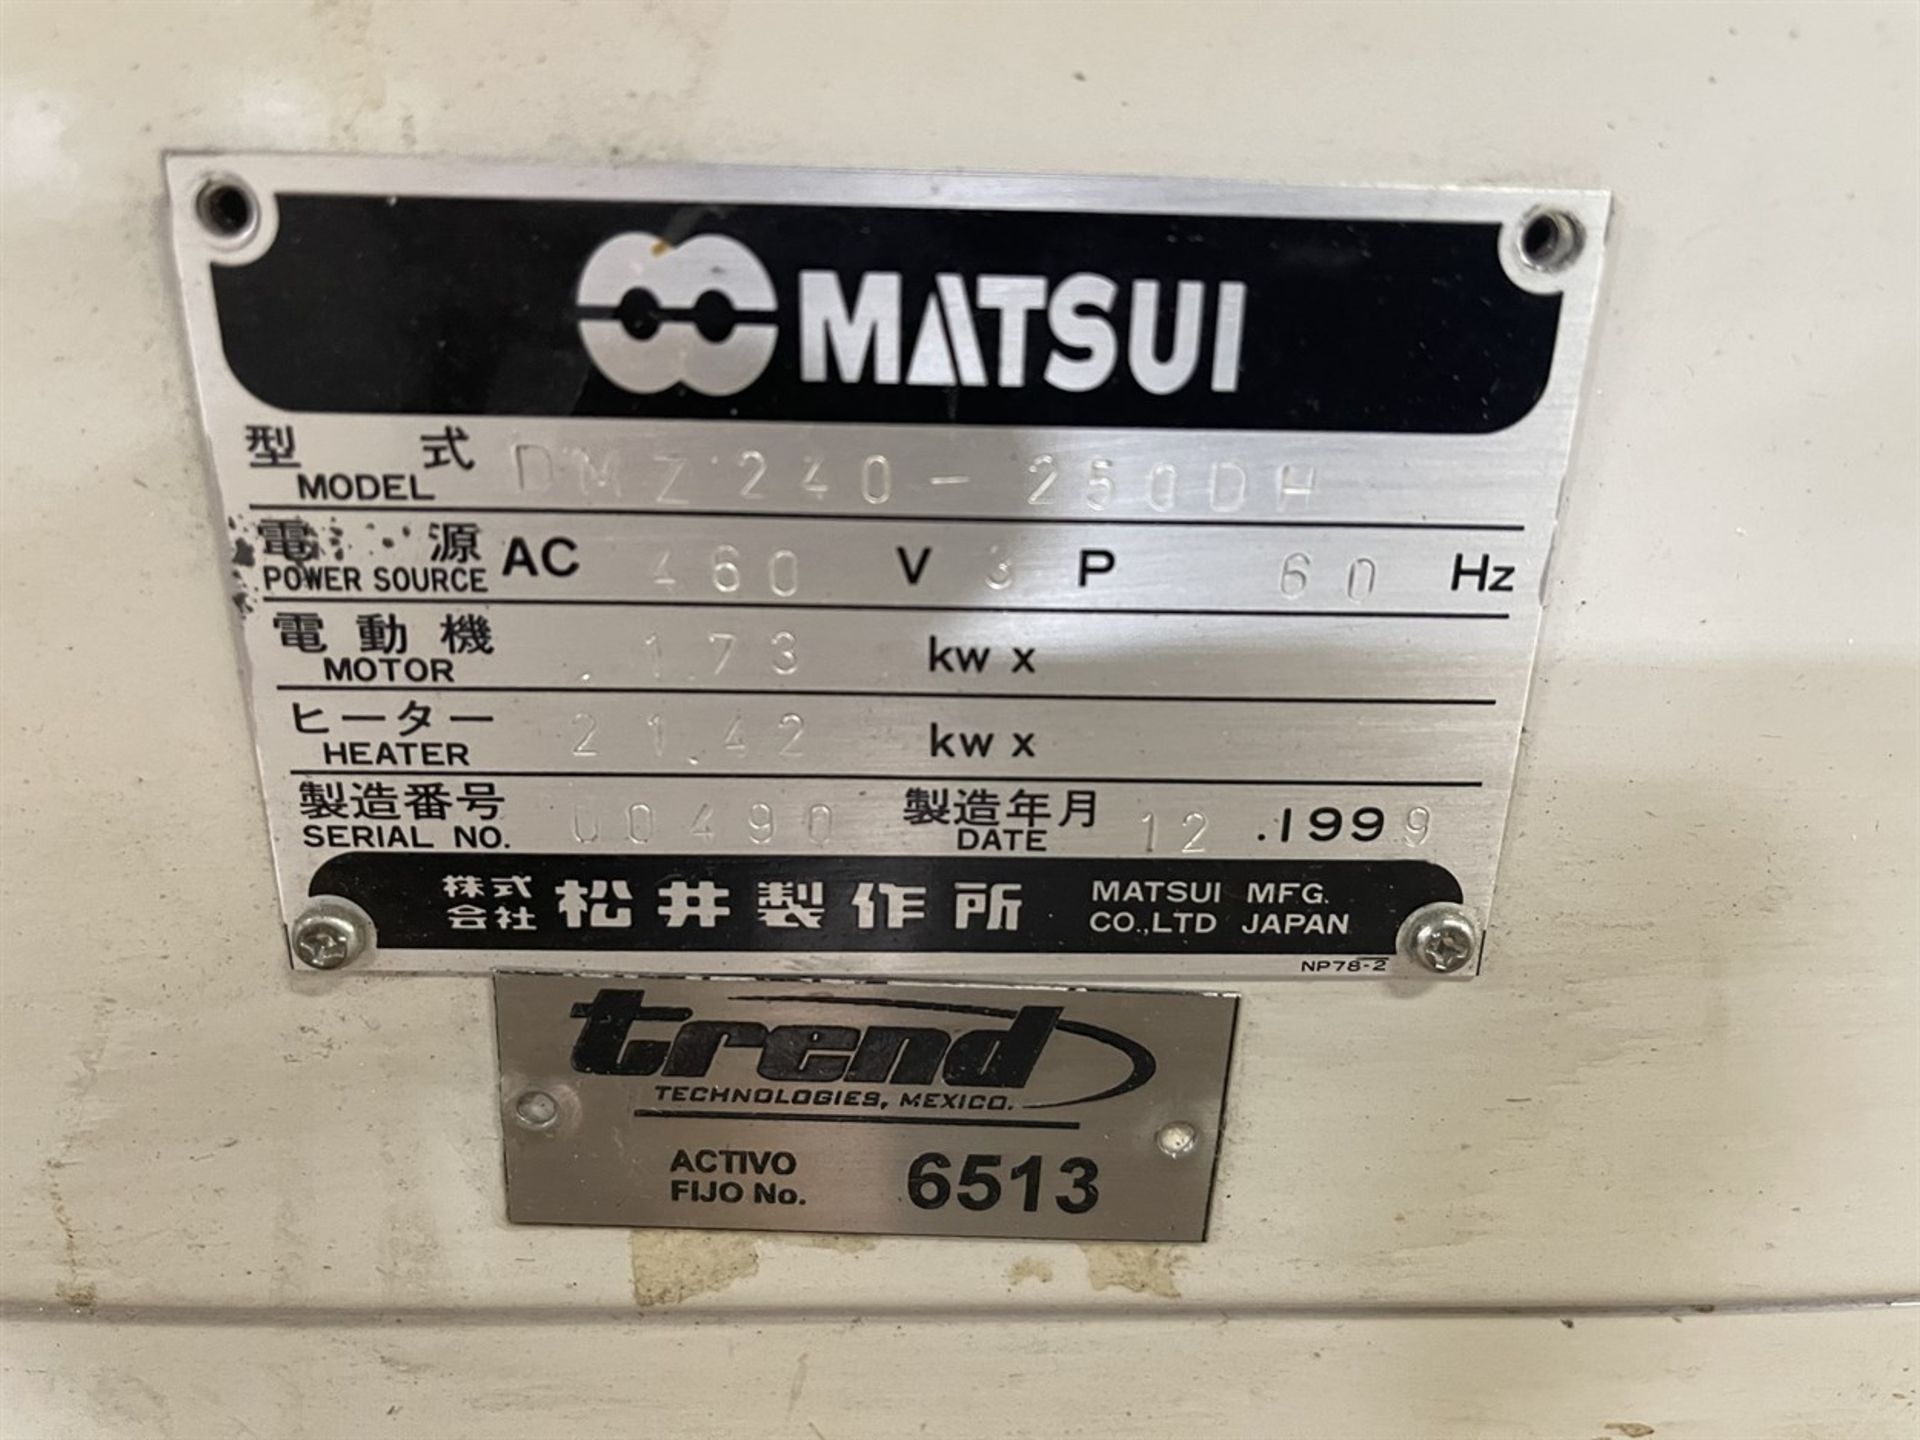 MATSUI DMZ-240-250DH Portable Hopper Dryer, s/n 00490 - Image 5 of 6